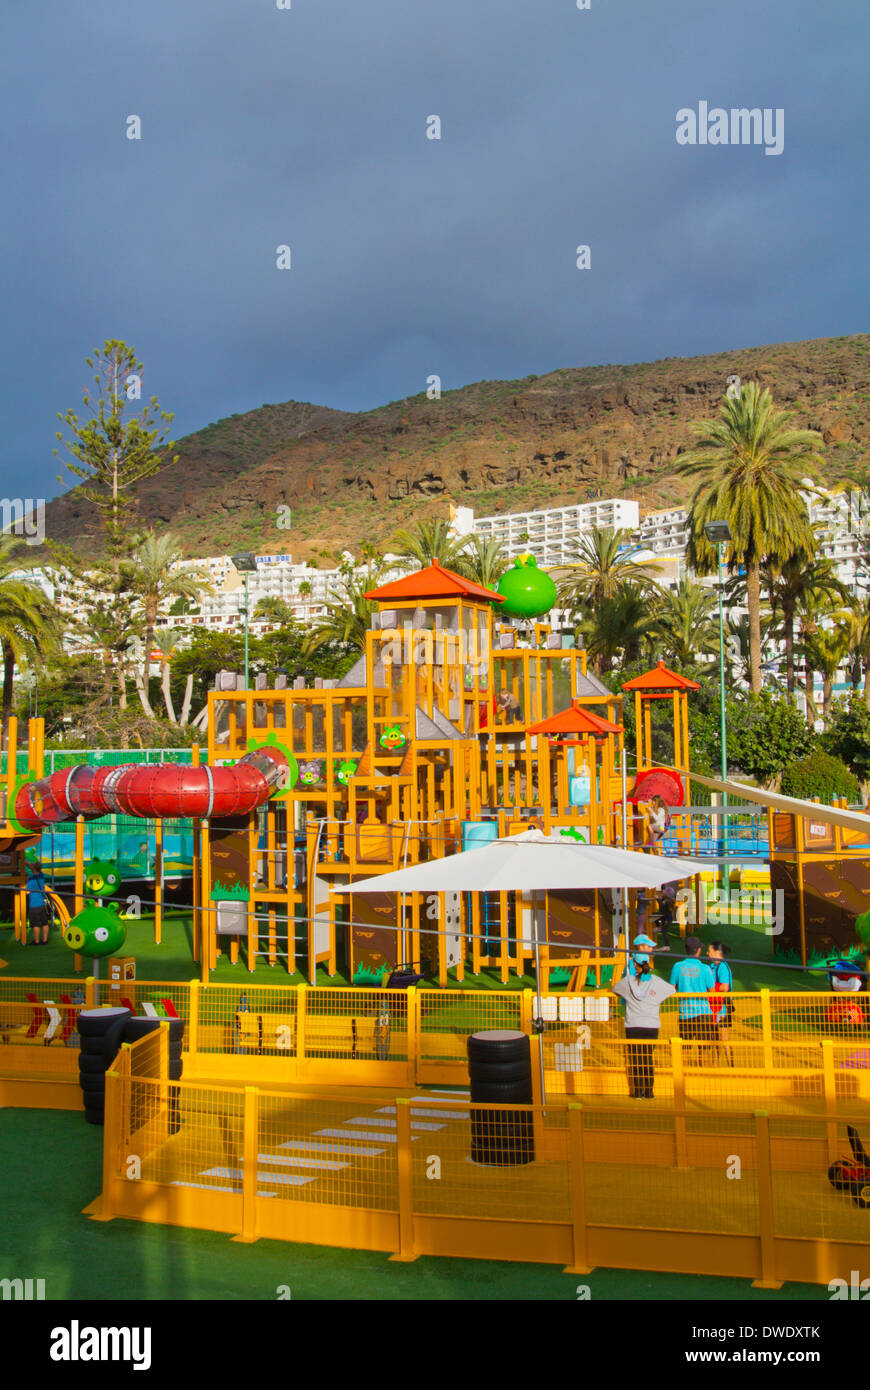 Parc à thème Angry Birds, Puerto Rico, Gran Canaria island, les îles Canaries, Espagne, Europe Banque D'Images